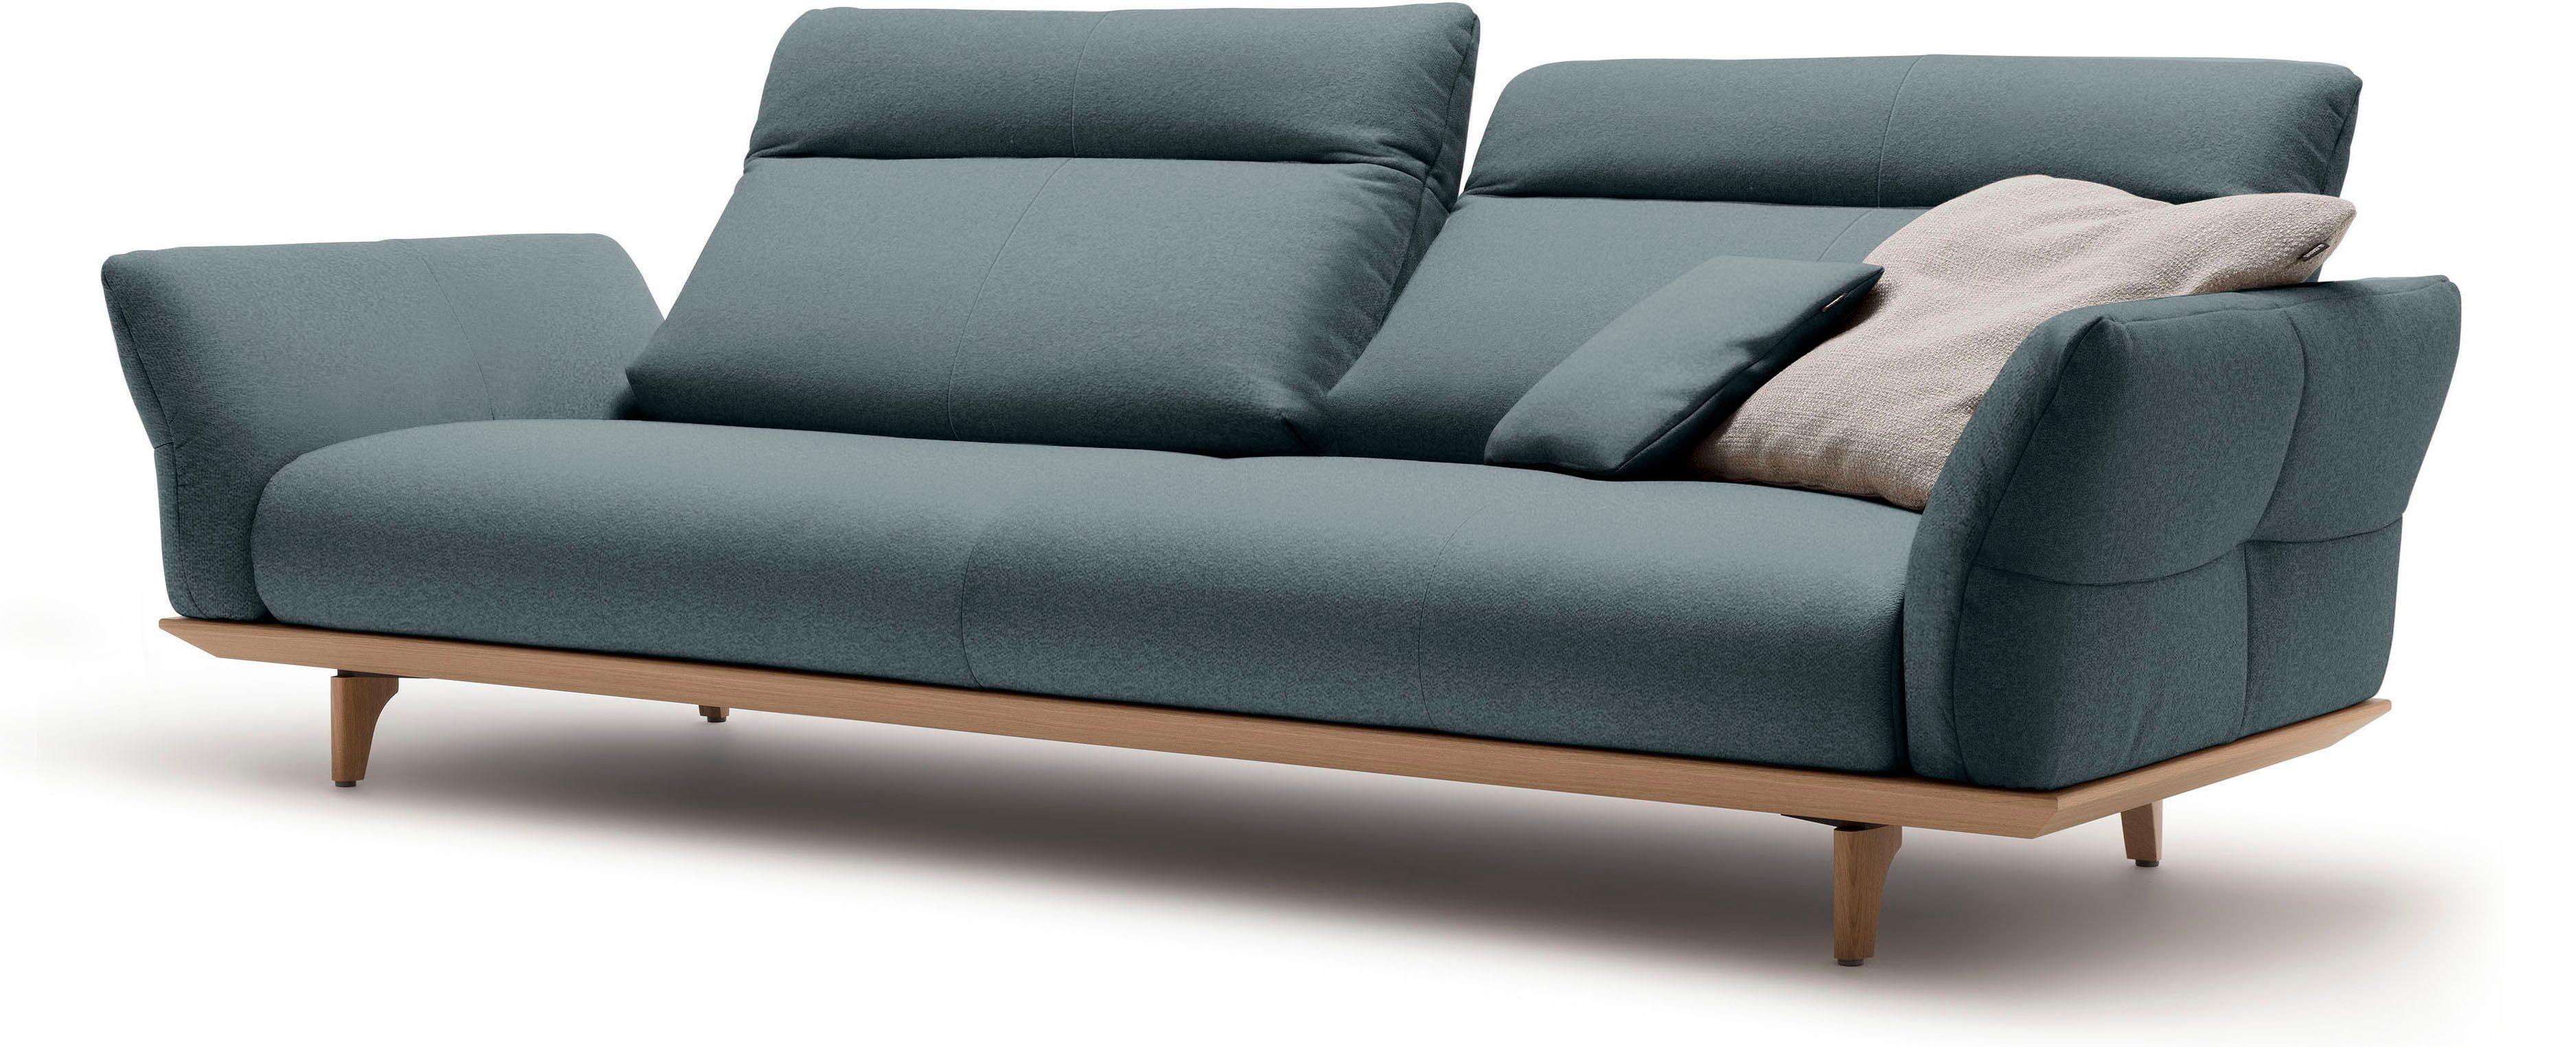 Sockel Eiche Breite in Füße Eiche, natur, 4-Sitzer 248 cm sofa hs.460, hülsta